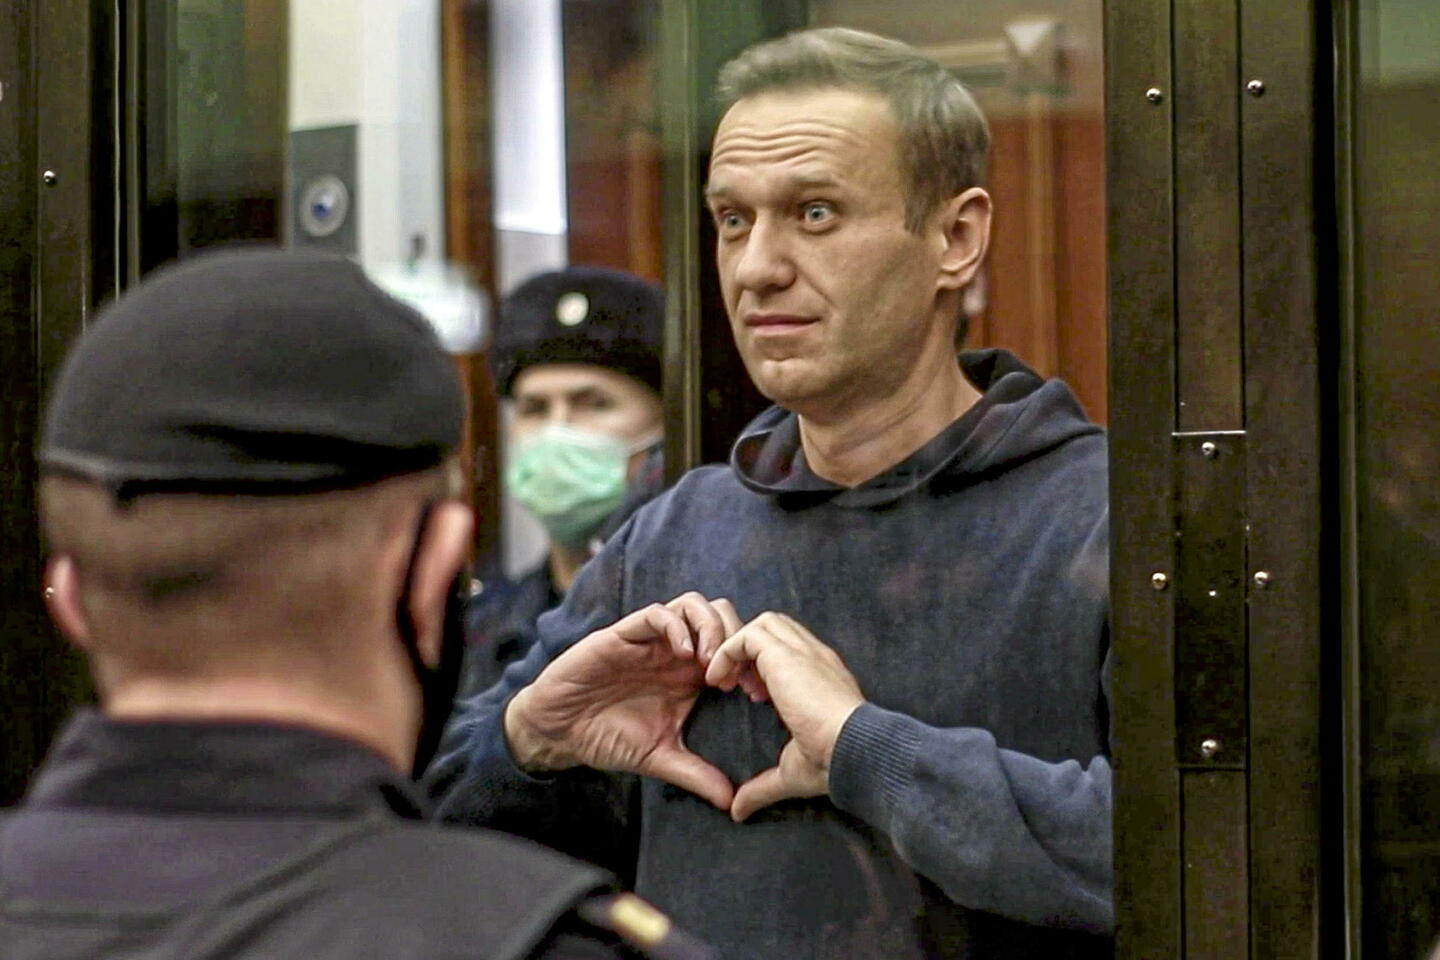 mort de navalny : le corps de l’opposant russe aurait été retrouvé